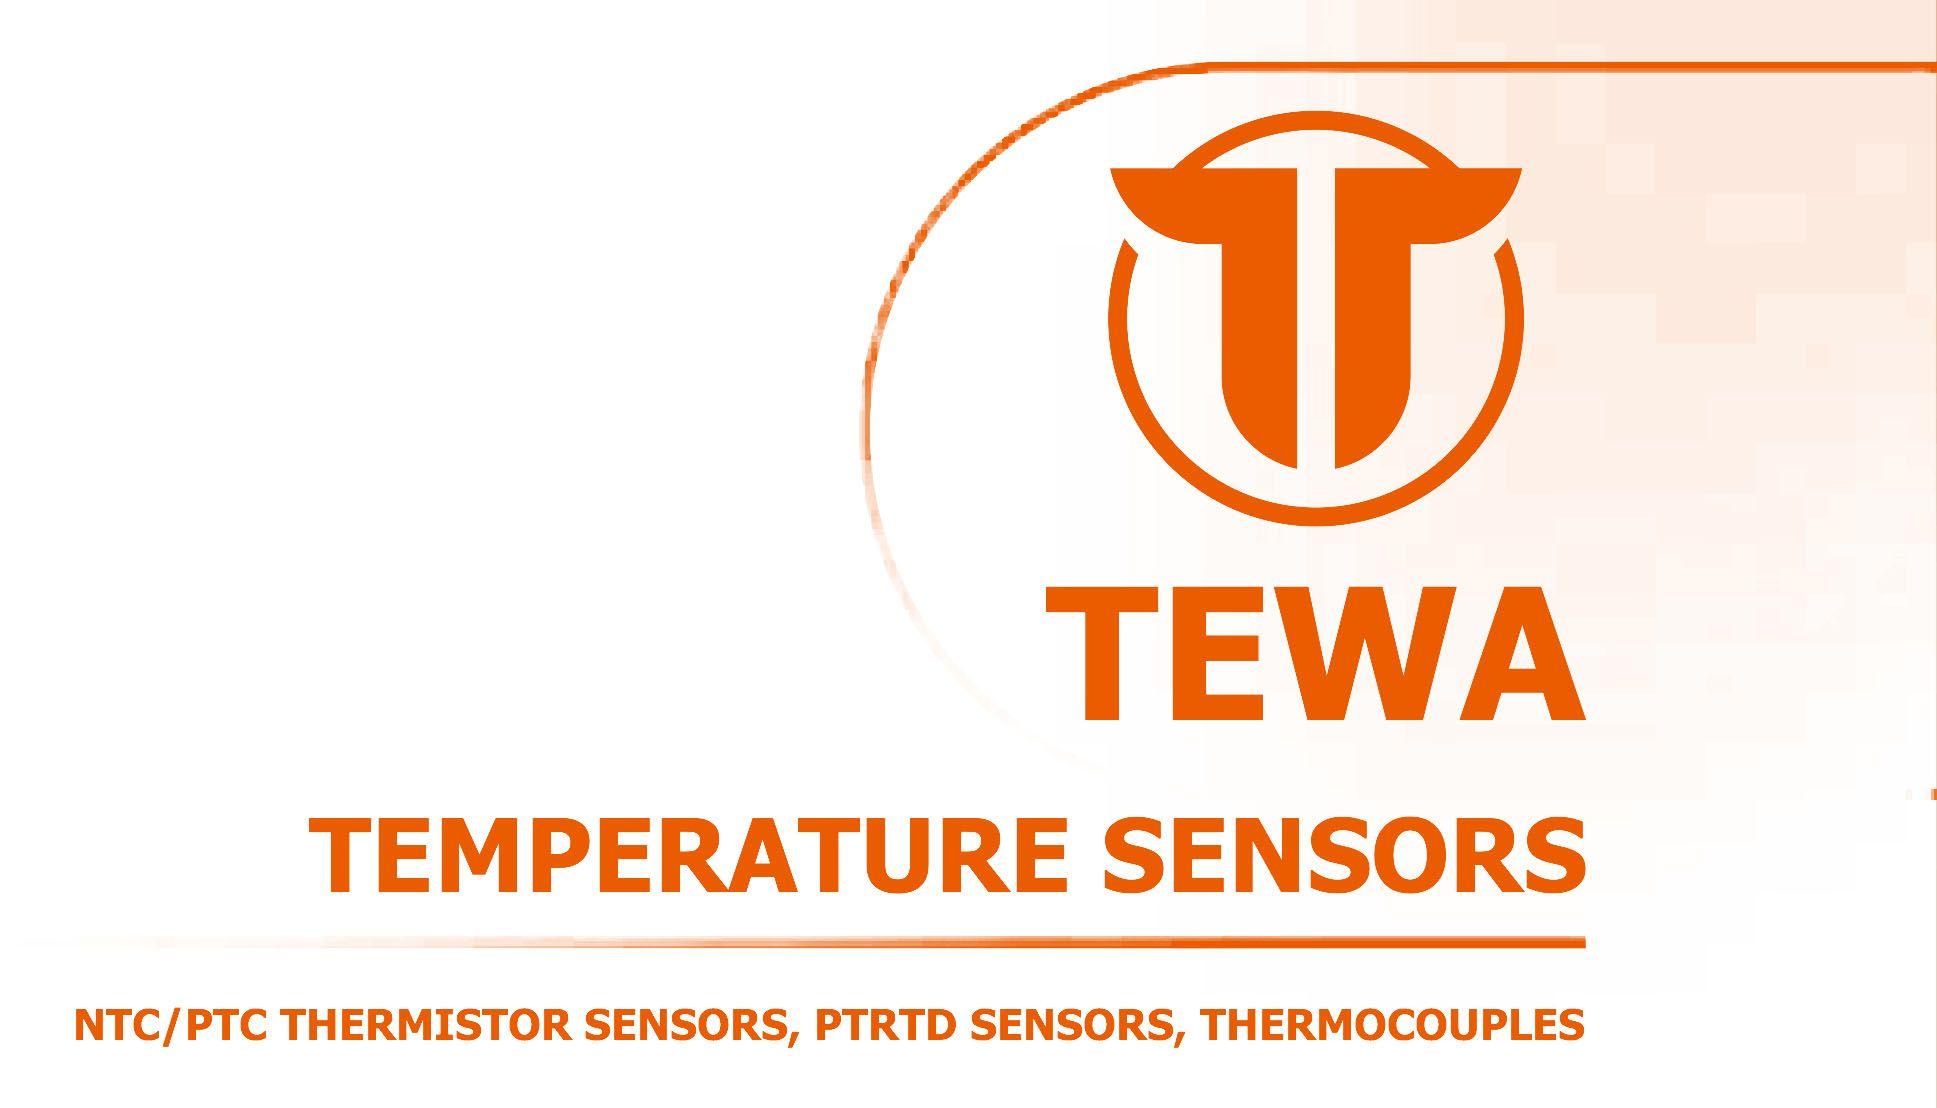 Te WA Logo - TEWA Electronics Group : Industrial Electronics, Industrial Electronics